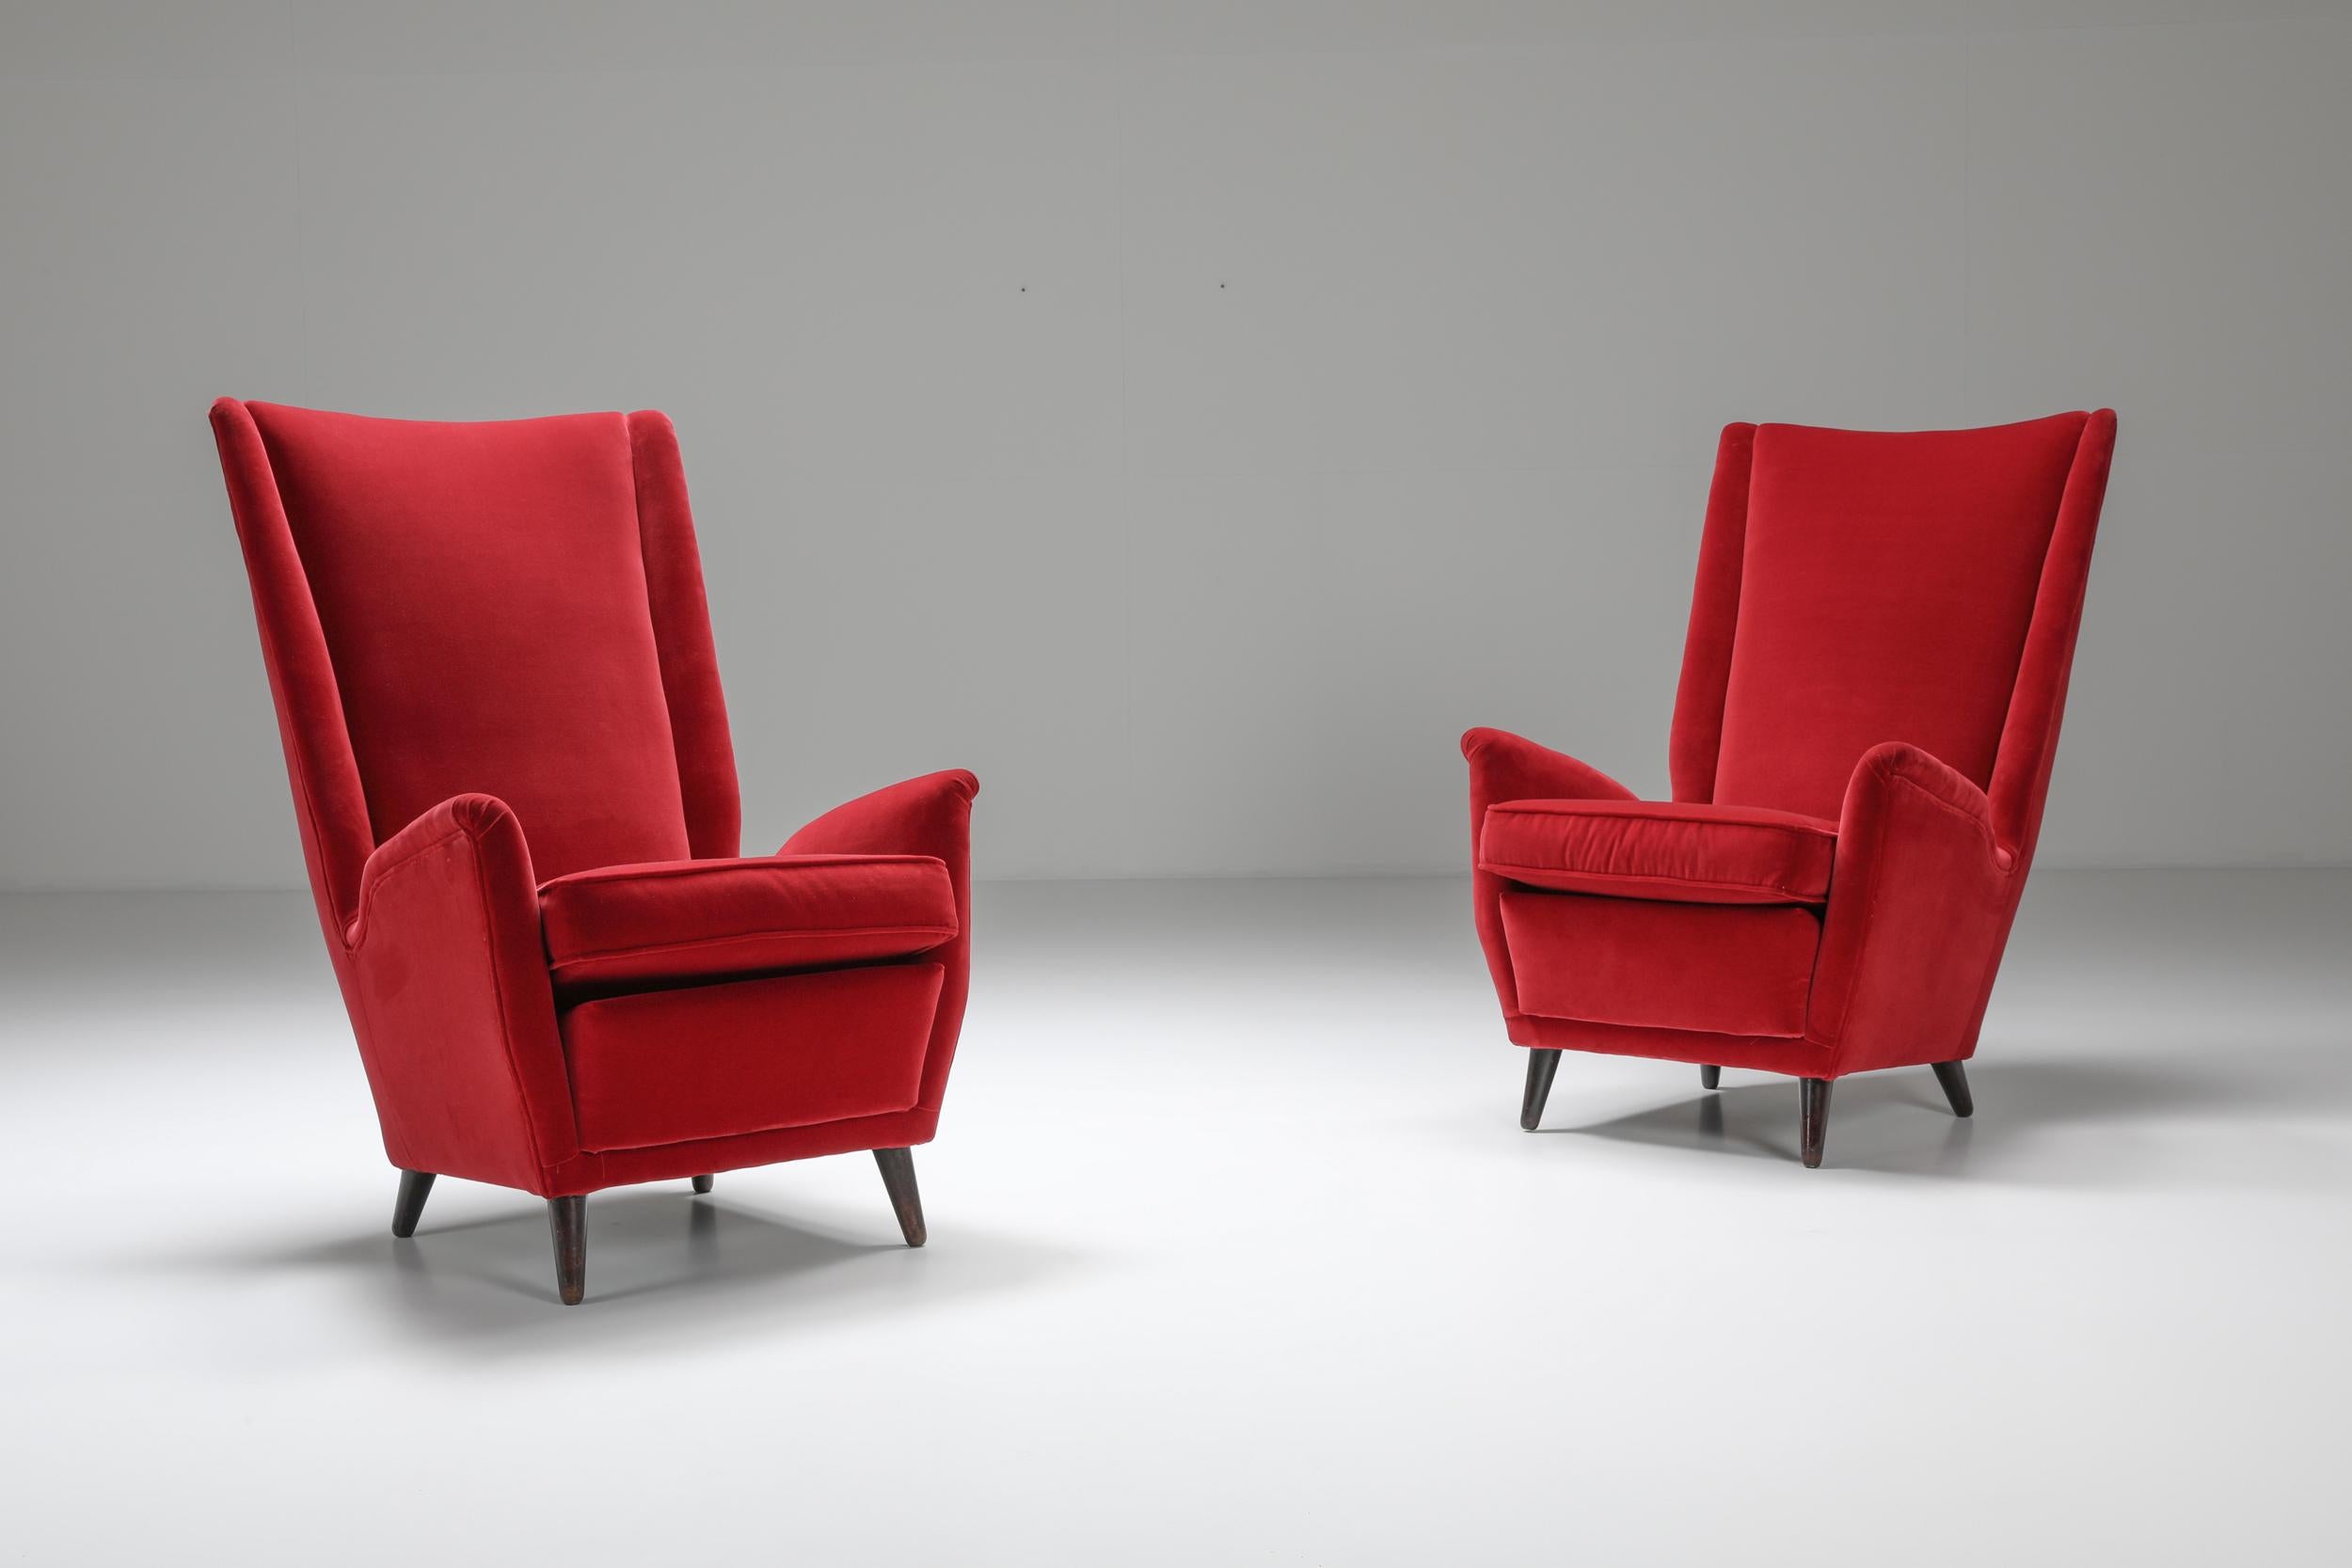 Fauteuil à oreilles italien en tapisserie rouge de Gio Ponti. Chaise longue à haut dossier de Gio Ponti avec un dossier légèrement incliné qui soutient la position assise, ce qui rend l'assise très confortable. Cette chaise de salon aux formes